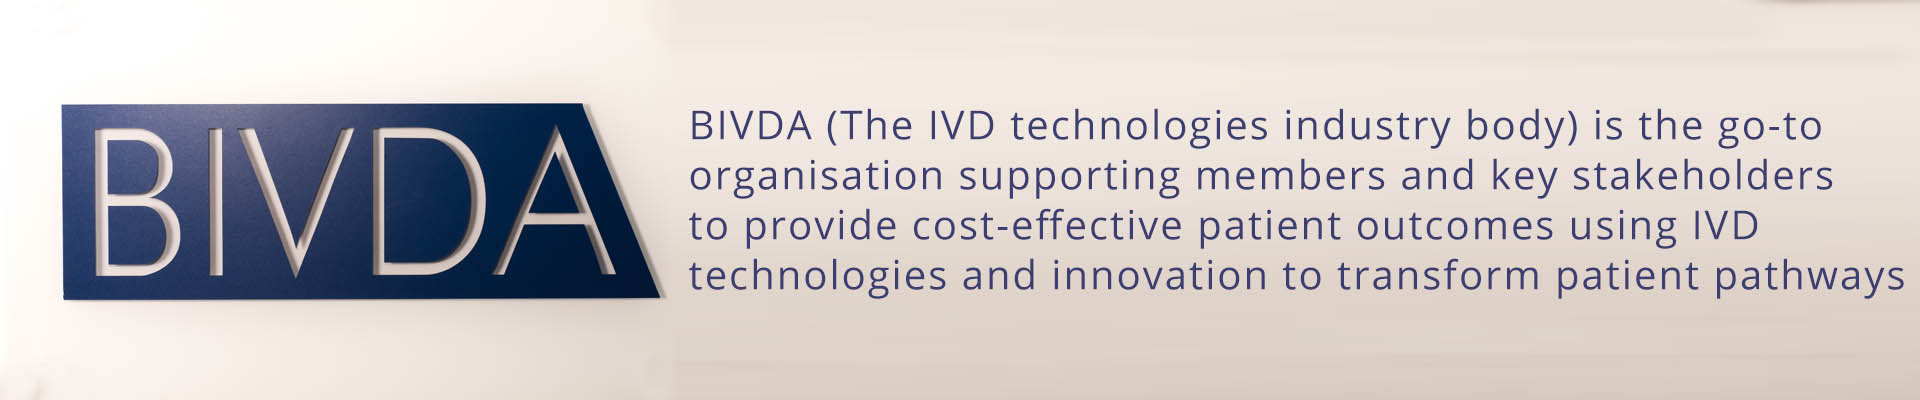 BIVDA - The British In Vitro Diagnostics Association